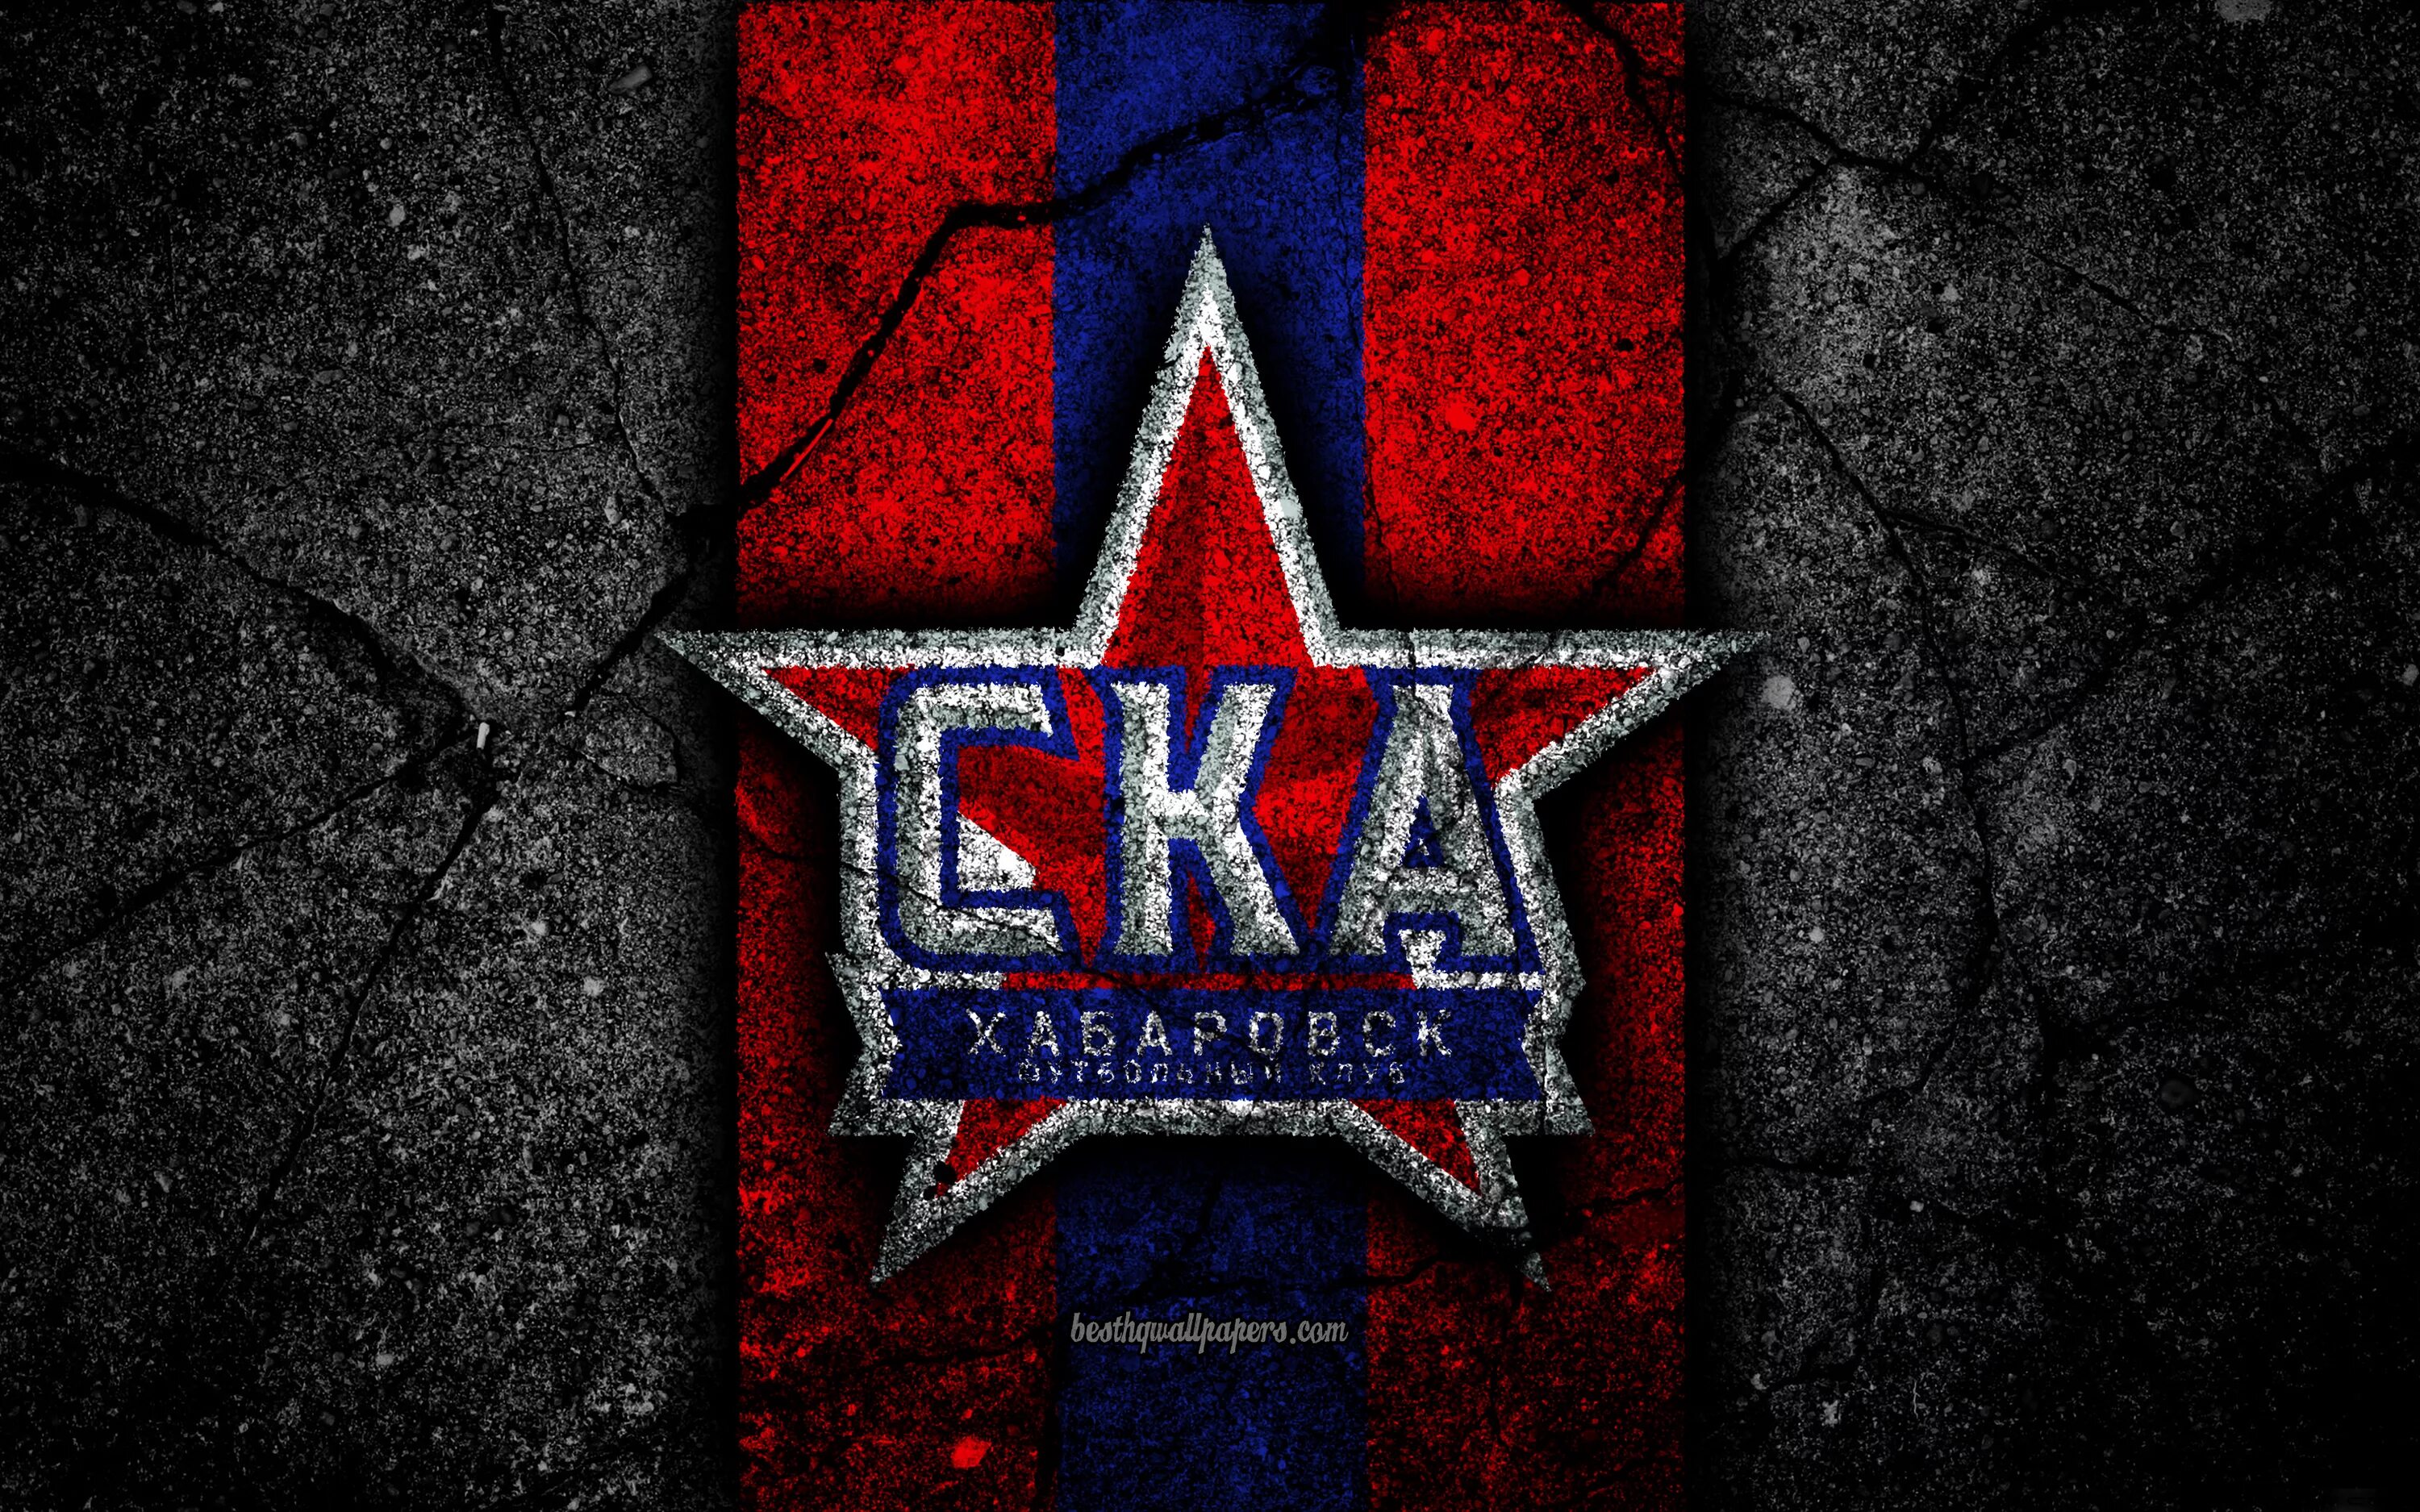 Хоккейный клуб СКА лого. Хоккейныйклюб СКА лого. Заставка хк СКА. СКА Хабаровск логотип.